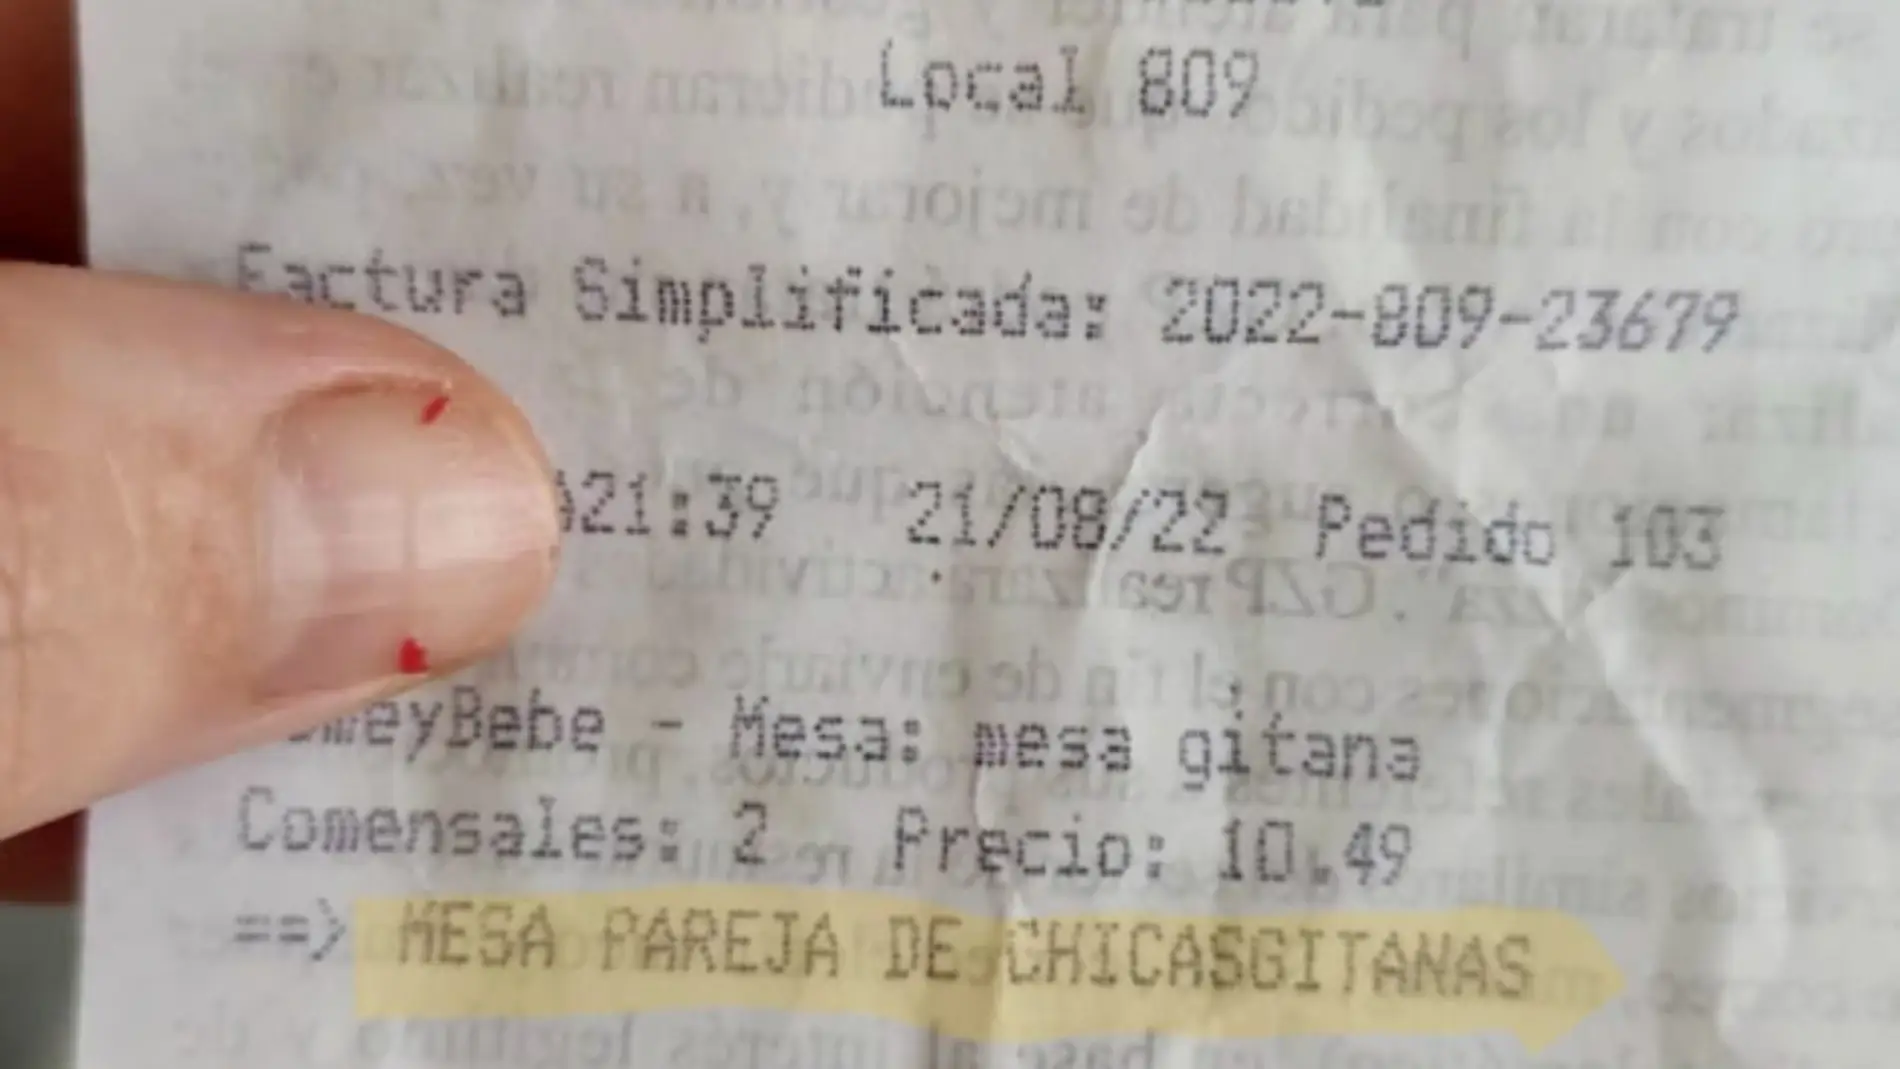 Denuncian un trato racista en una pizzería de Huesca al identificar una "mesa gitana"